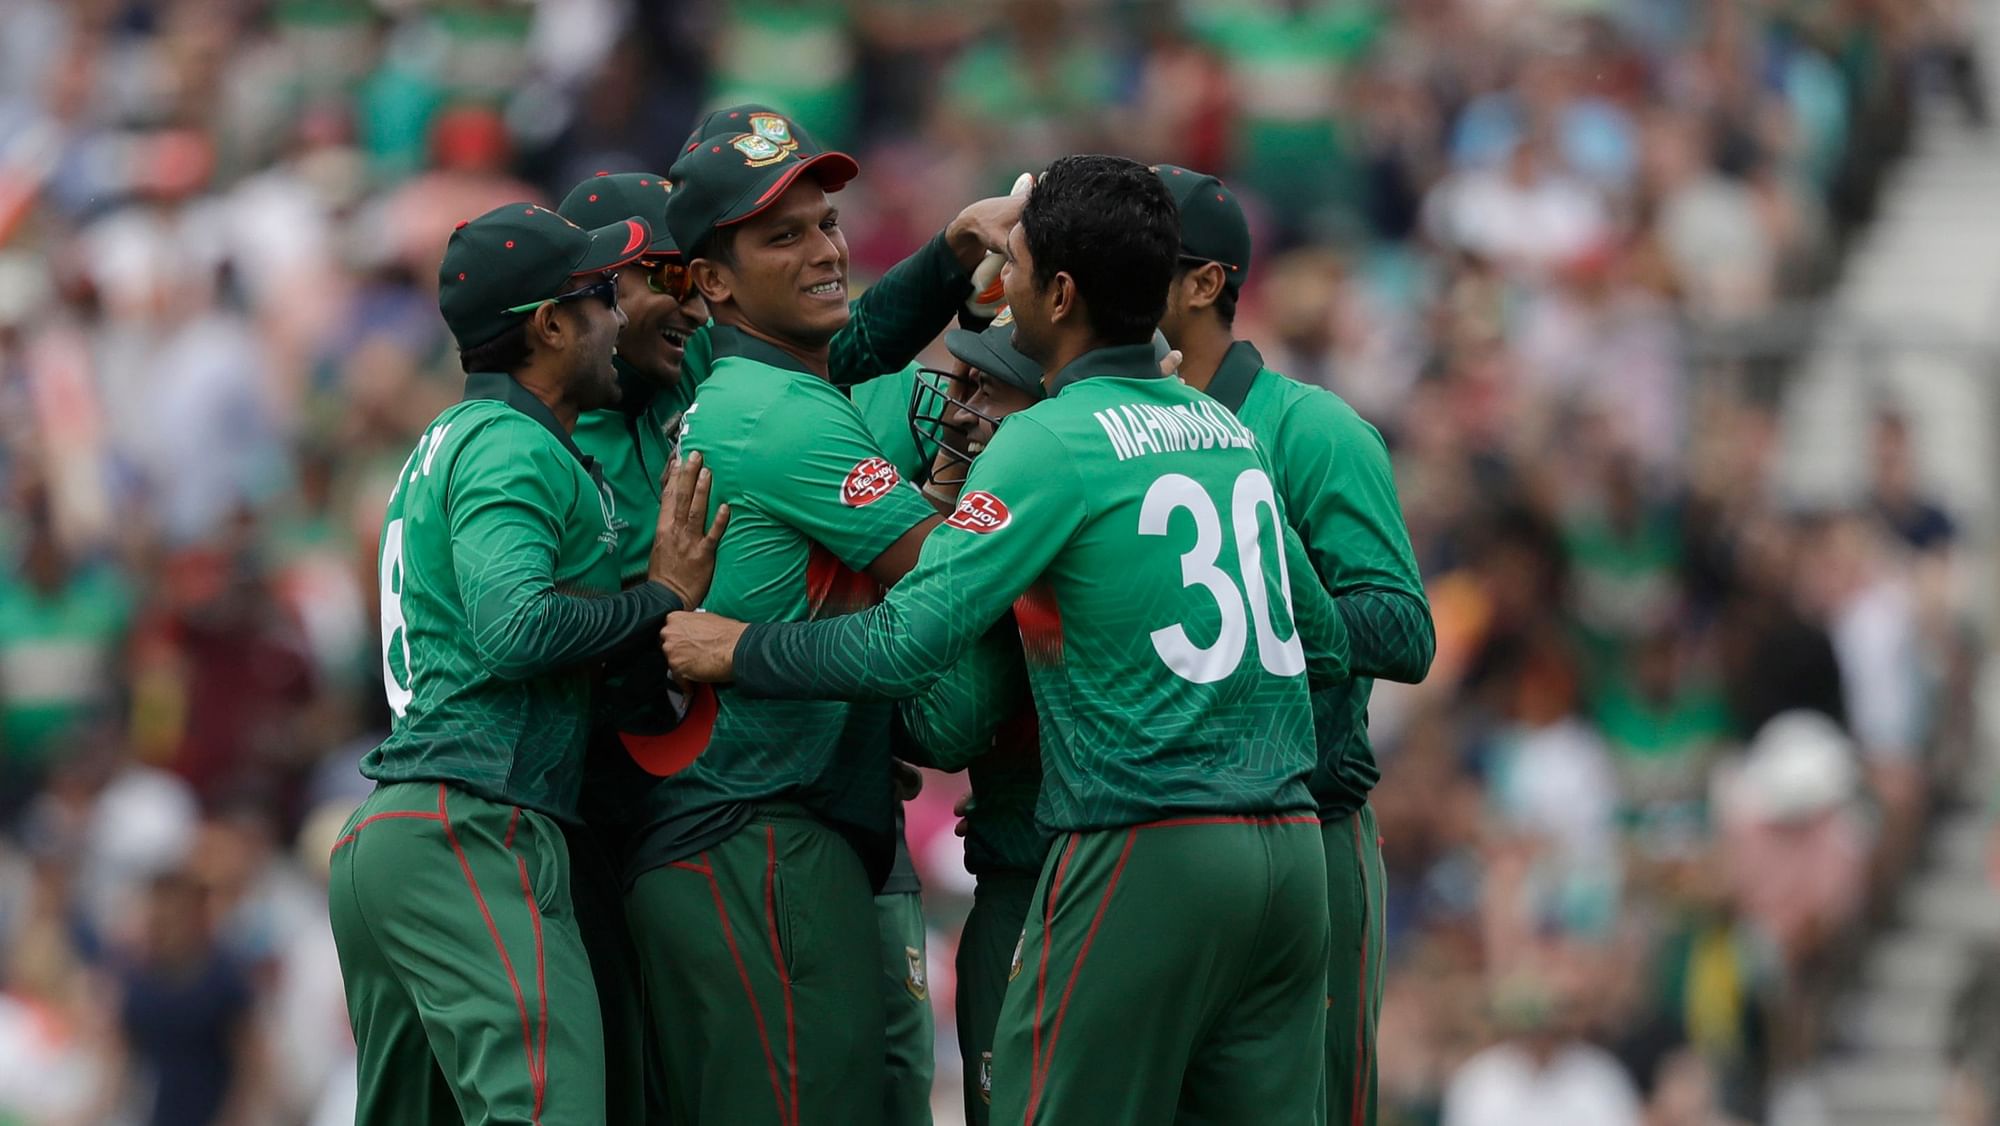 Bangladesh got off to a winning start in World Cup 2019.&nbsp;